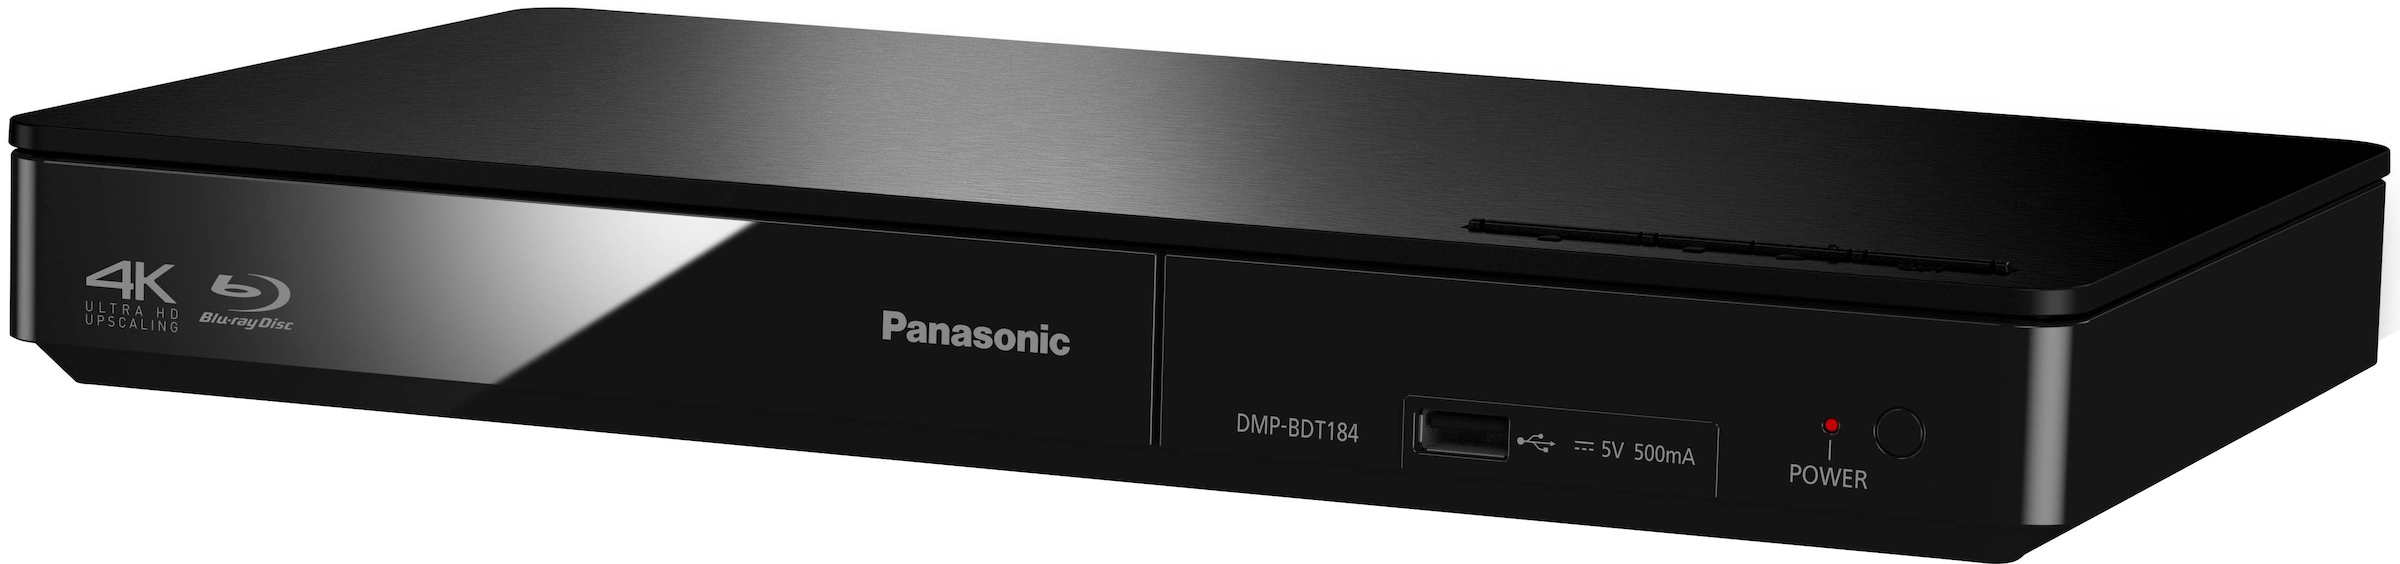 Panasonic Blu-ray-Player »DMP-BDT184 / DMP-BDT185«, (Ethernet), jetzt kaufen 4K LAN Upscaling-Schnellstart-Modus